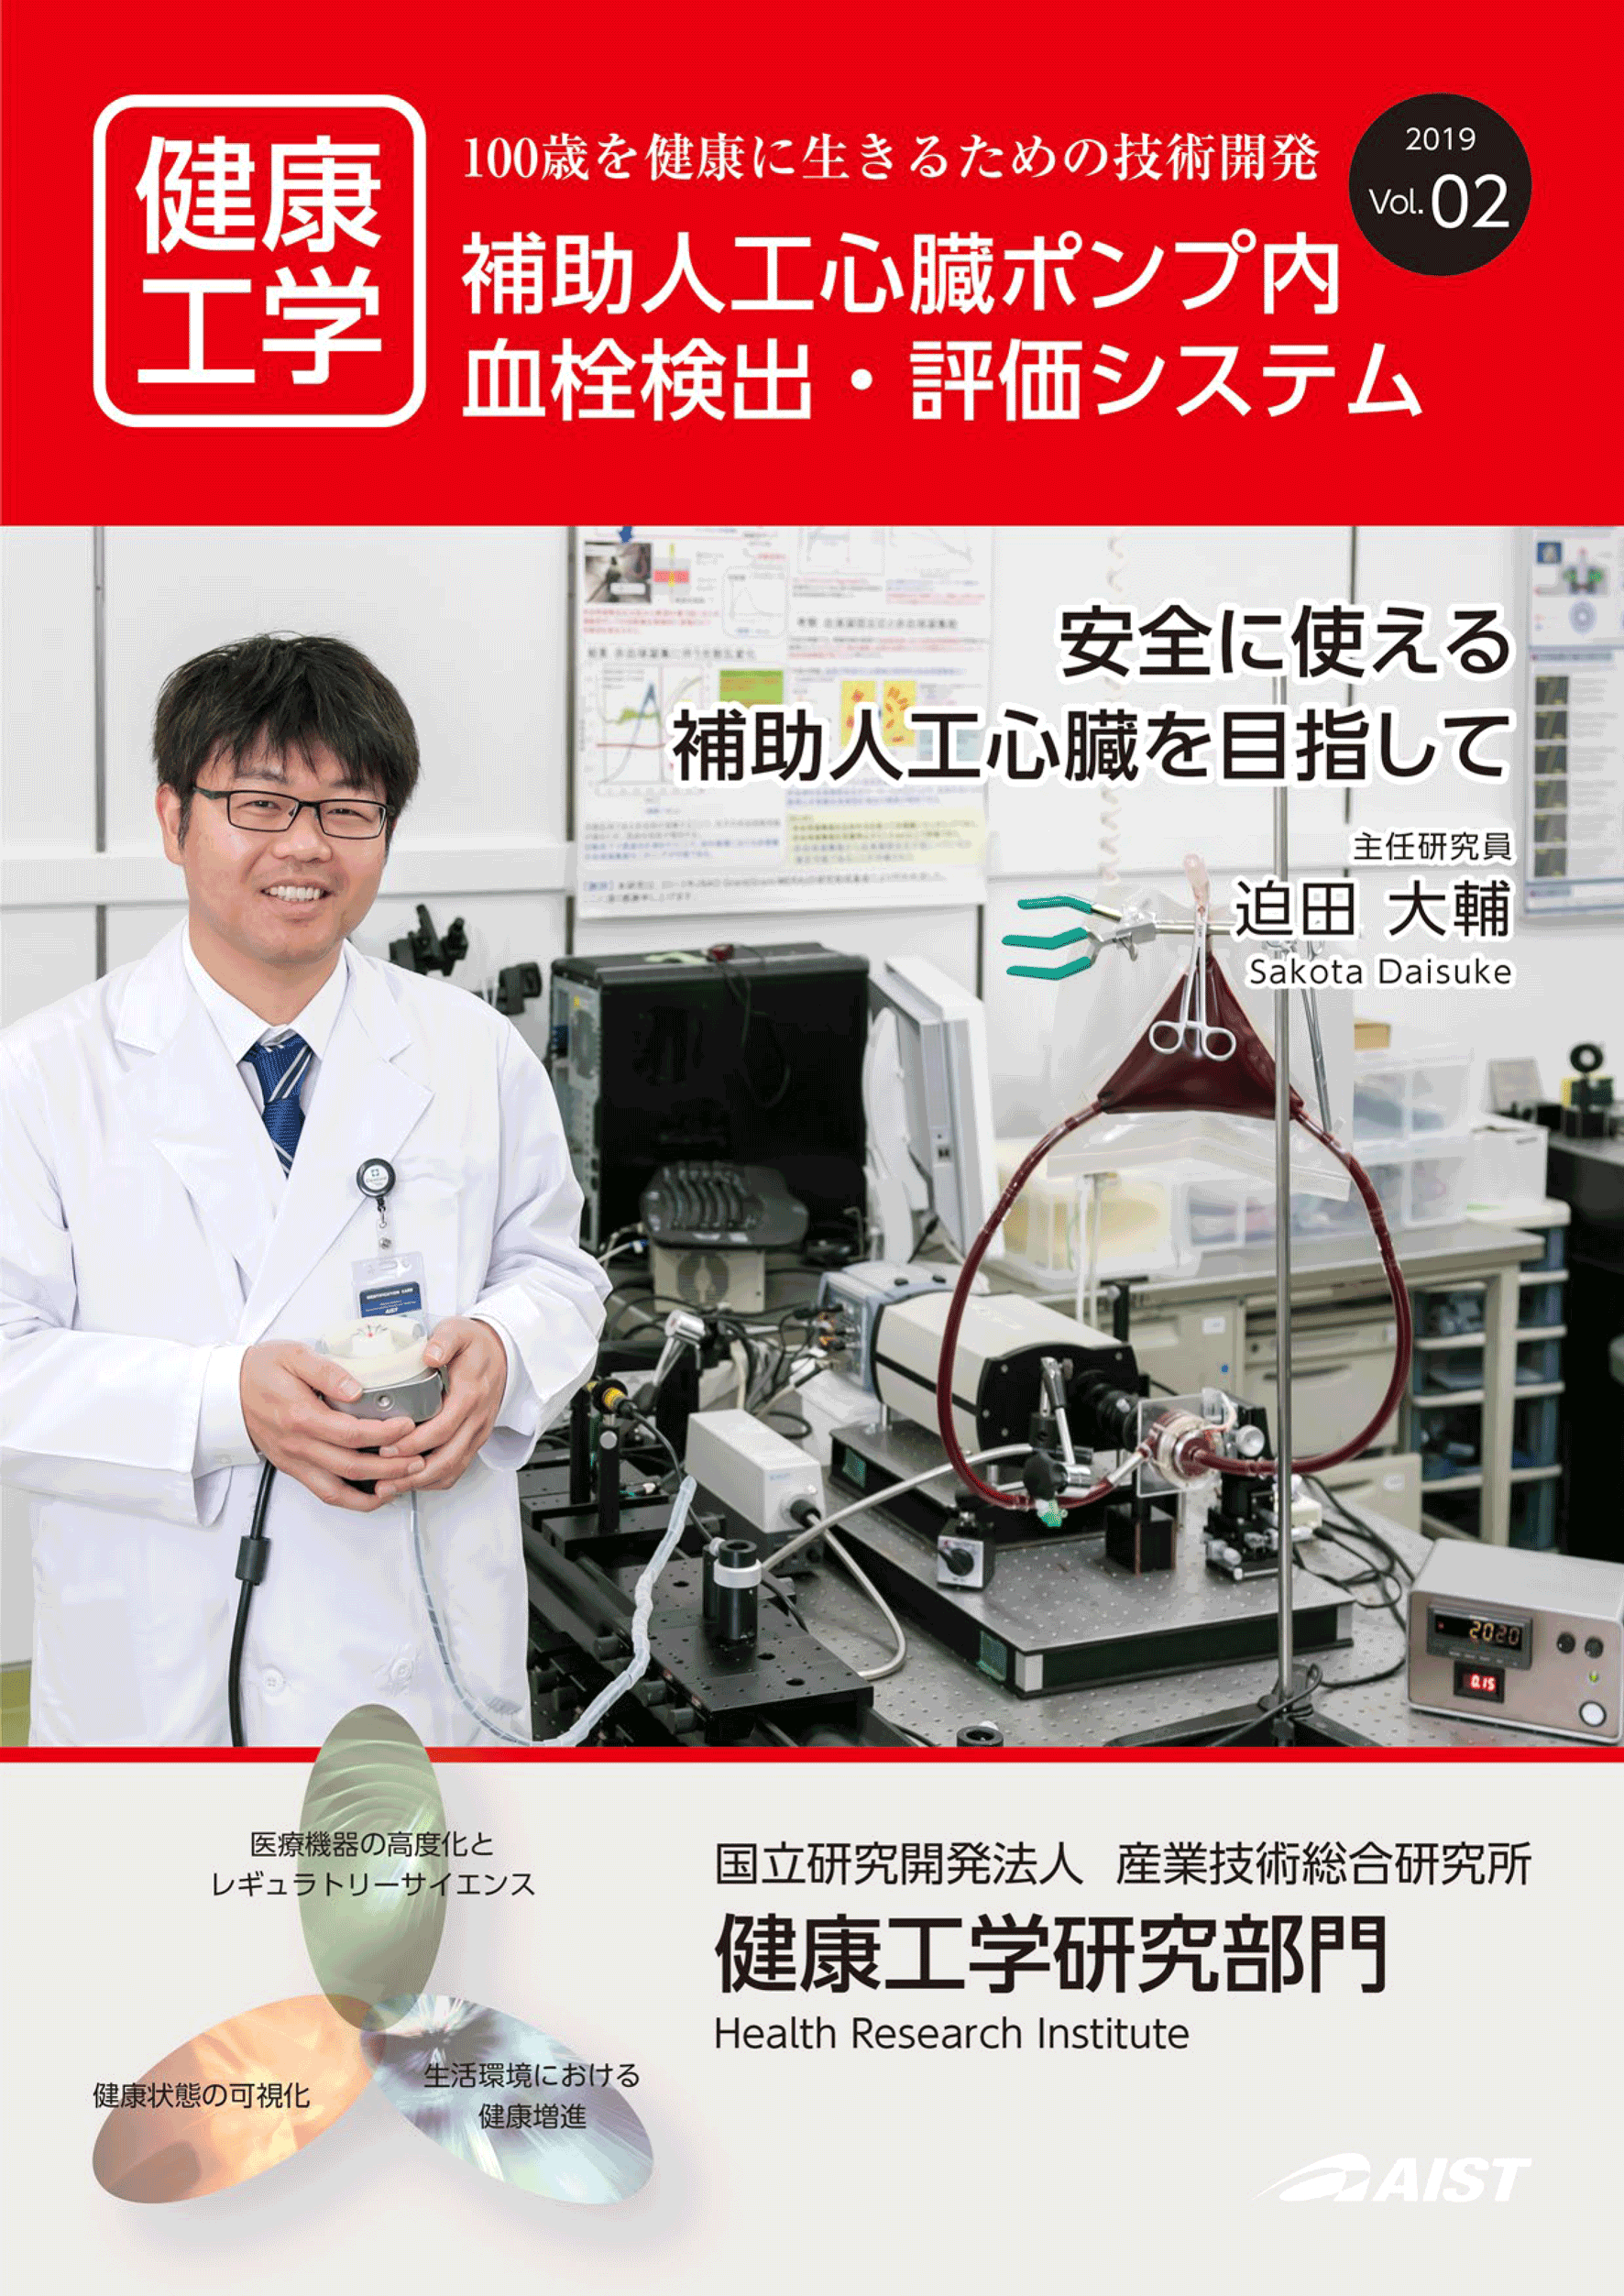 表紙:安全に使える補助人工心臓を目指して。人工臓器研究グループ 迫田 大輔 主任研究員の研究を特集しています。